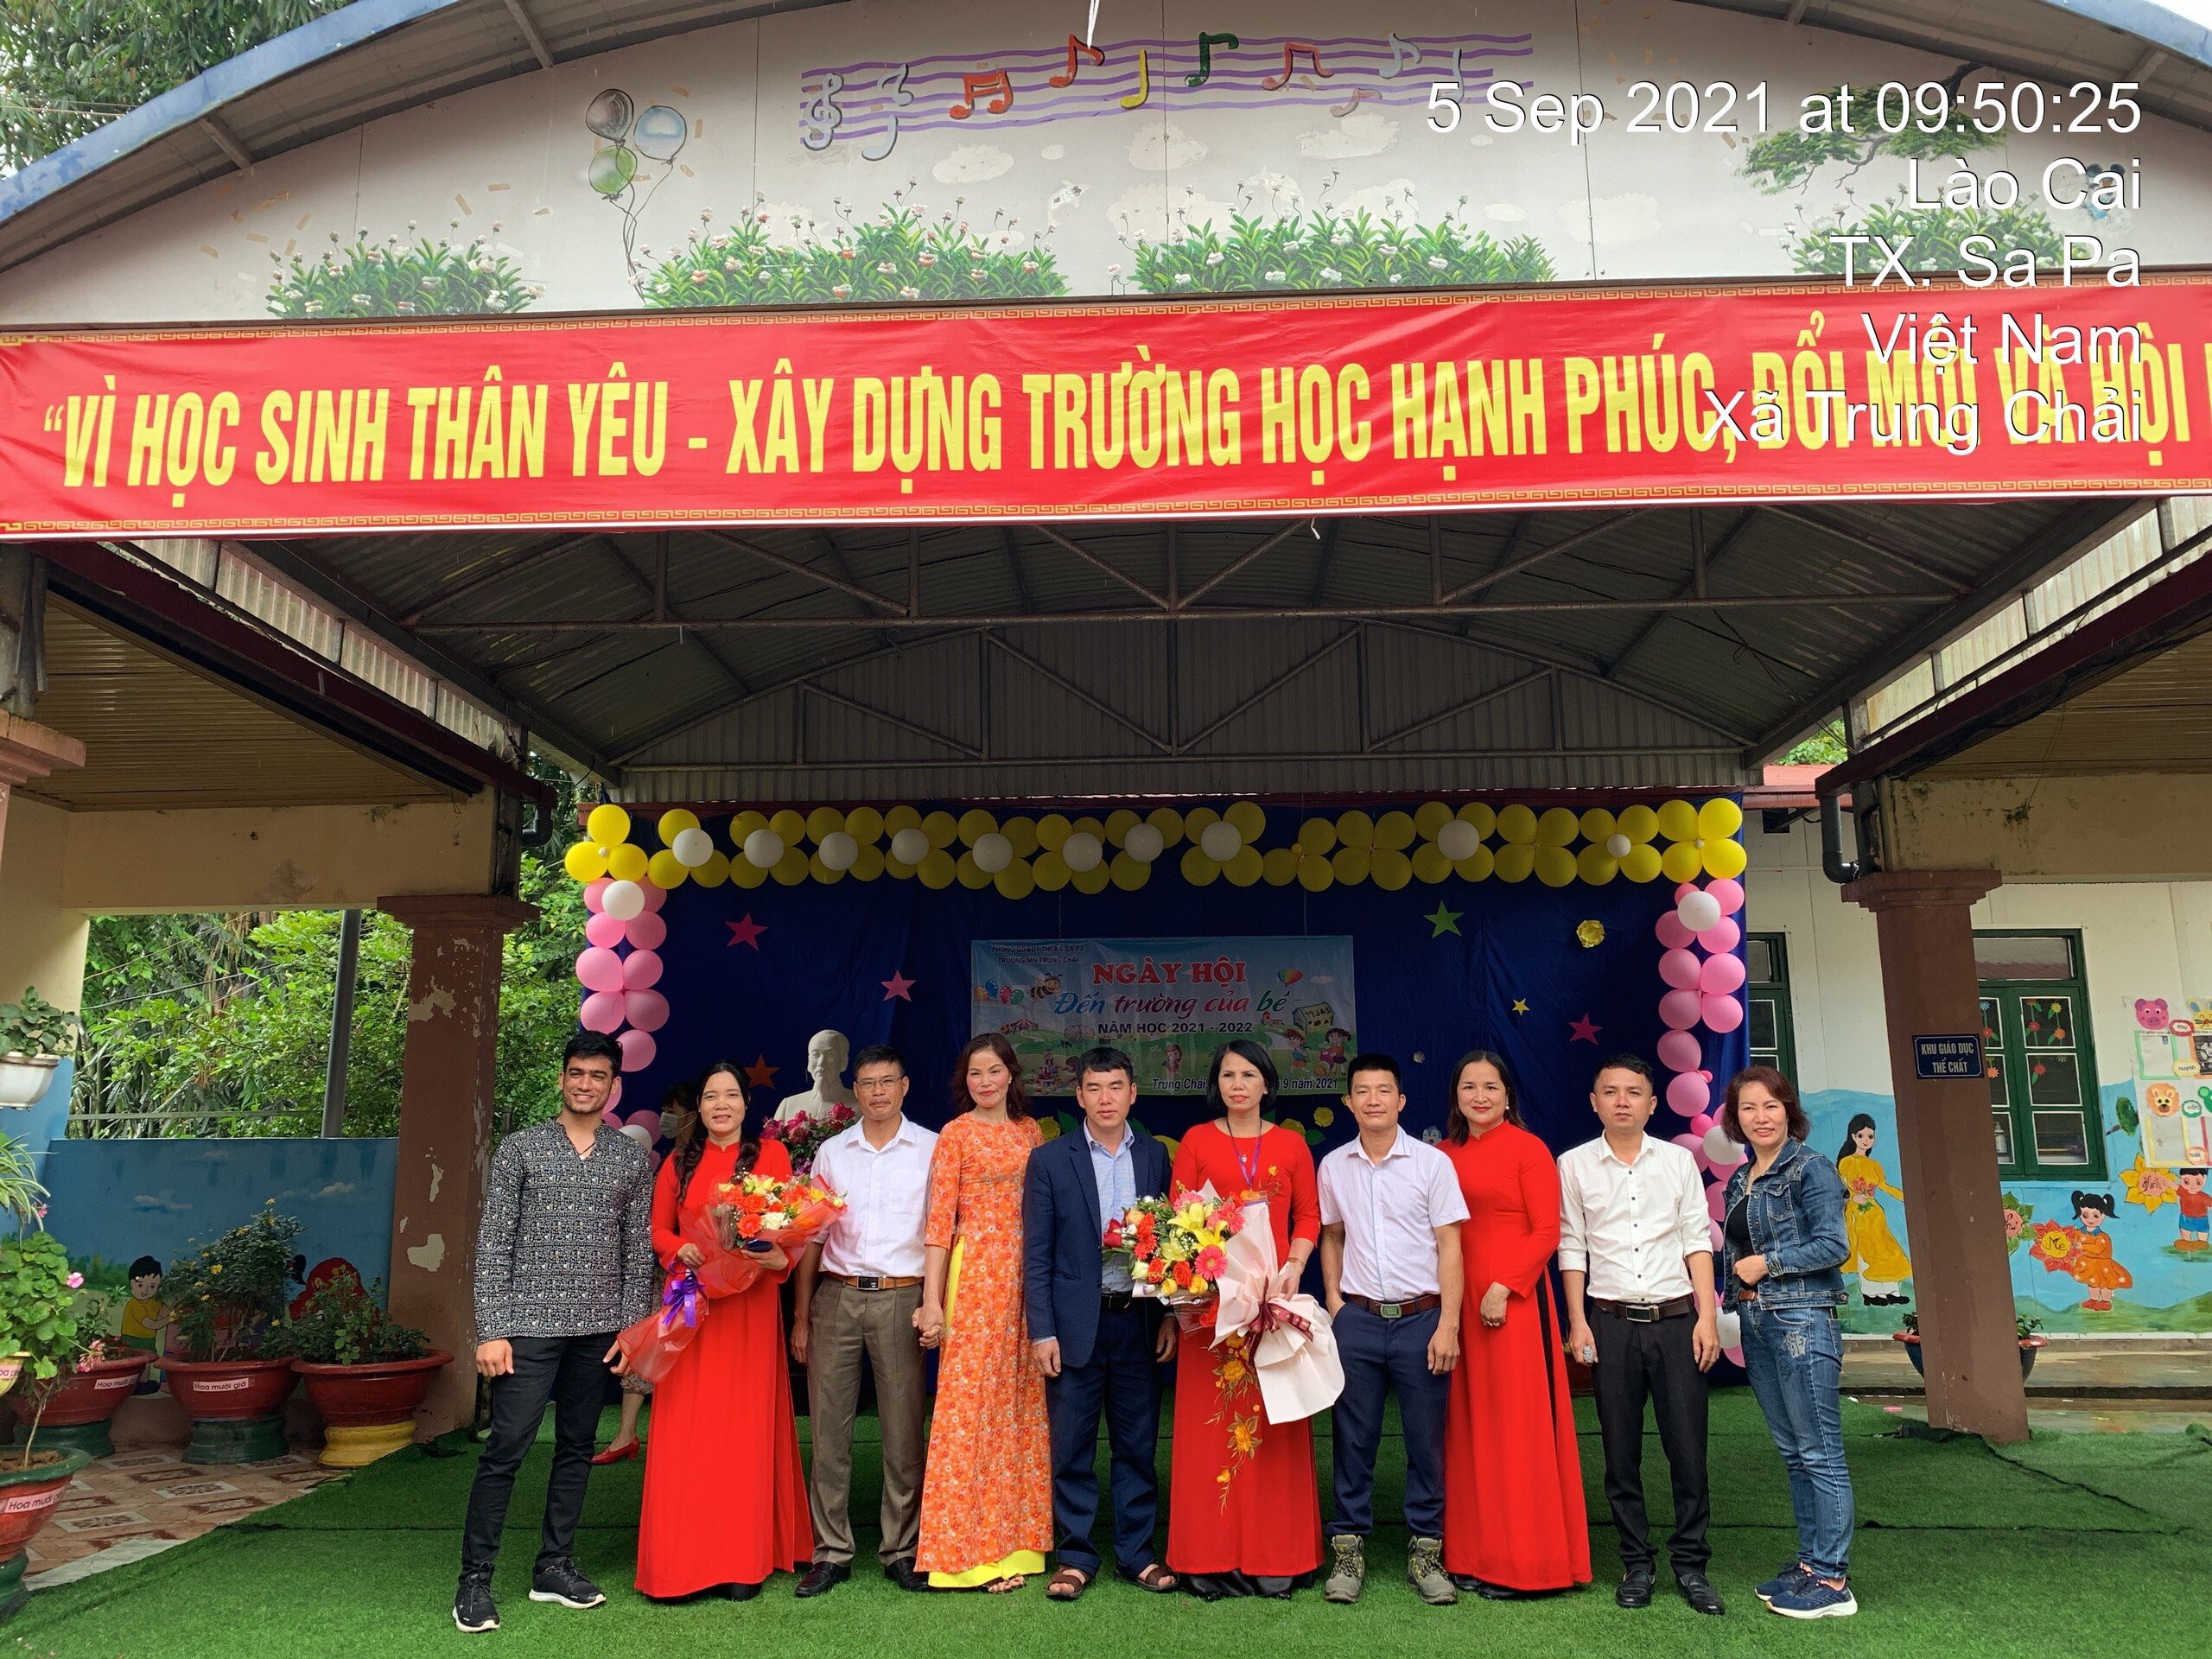 Ms. Trần Na -UVBCH VEHA gửi tặng lẵng hoa nhân ngày khai giảng